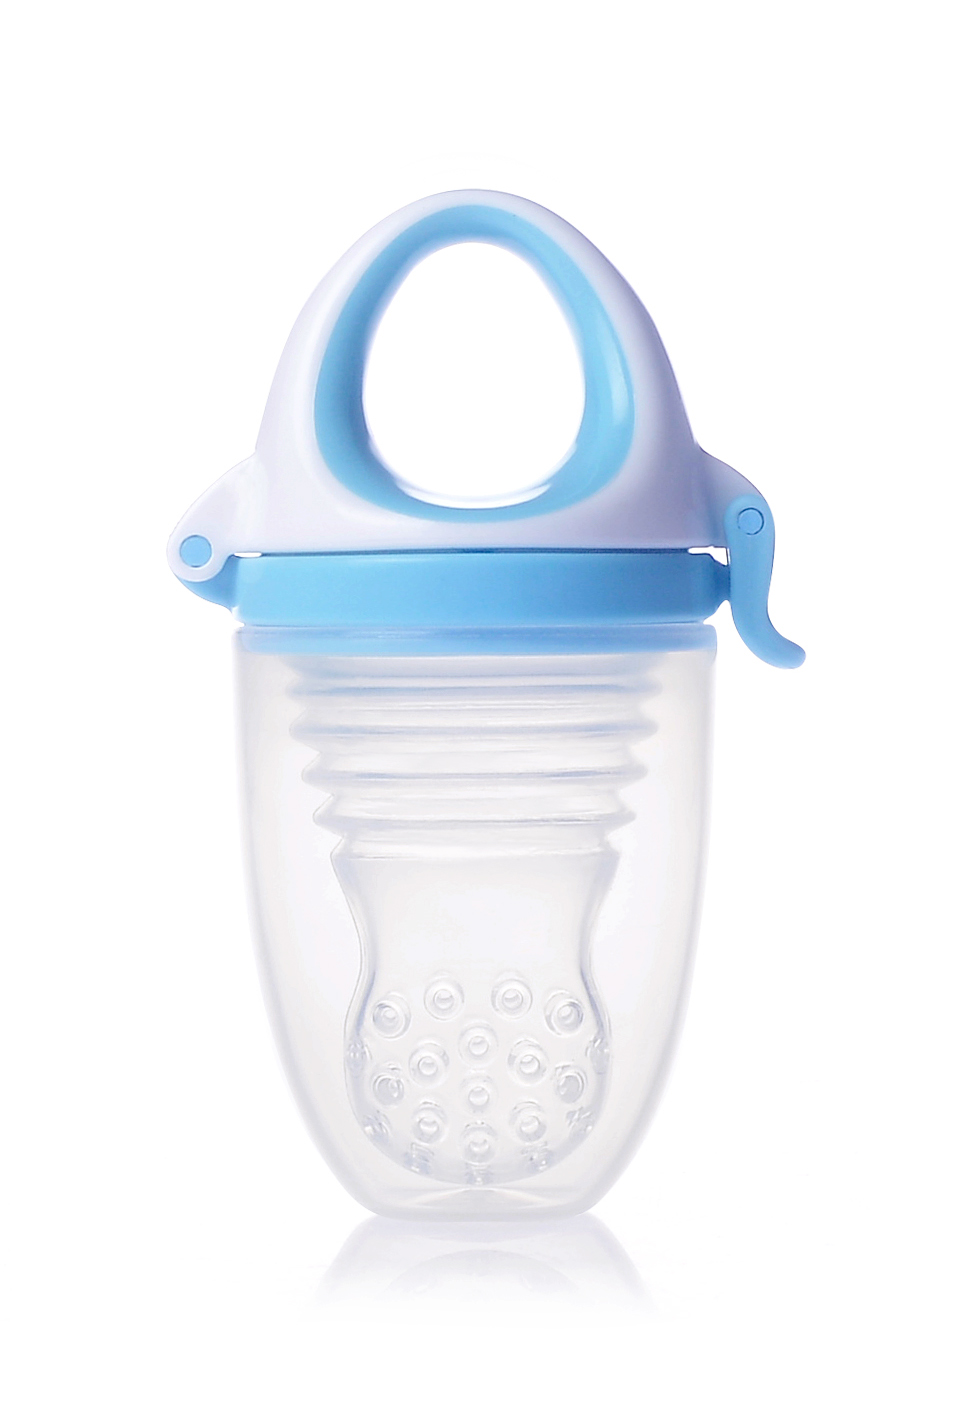 Kidsme Food Feeder Plus bērna ēdināšanas ierīce no 6 mēn, Aquamarine 160361AQ aksesuāri bērniem